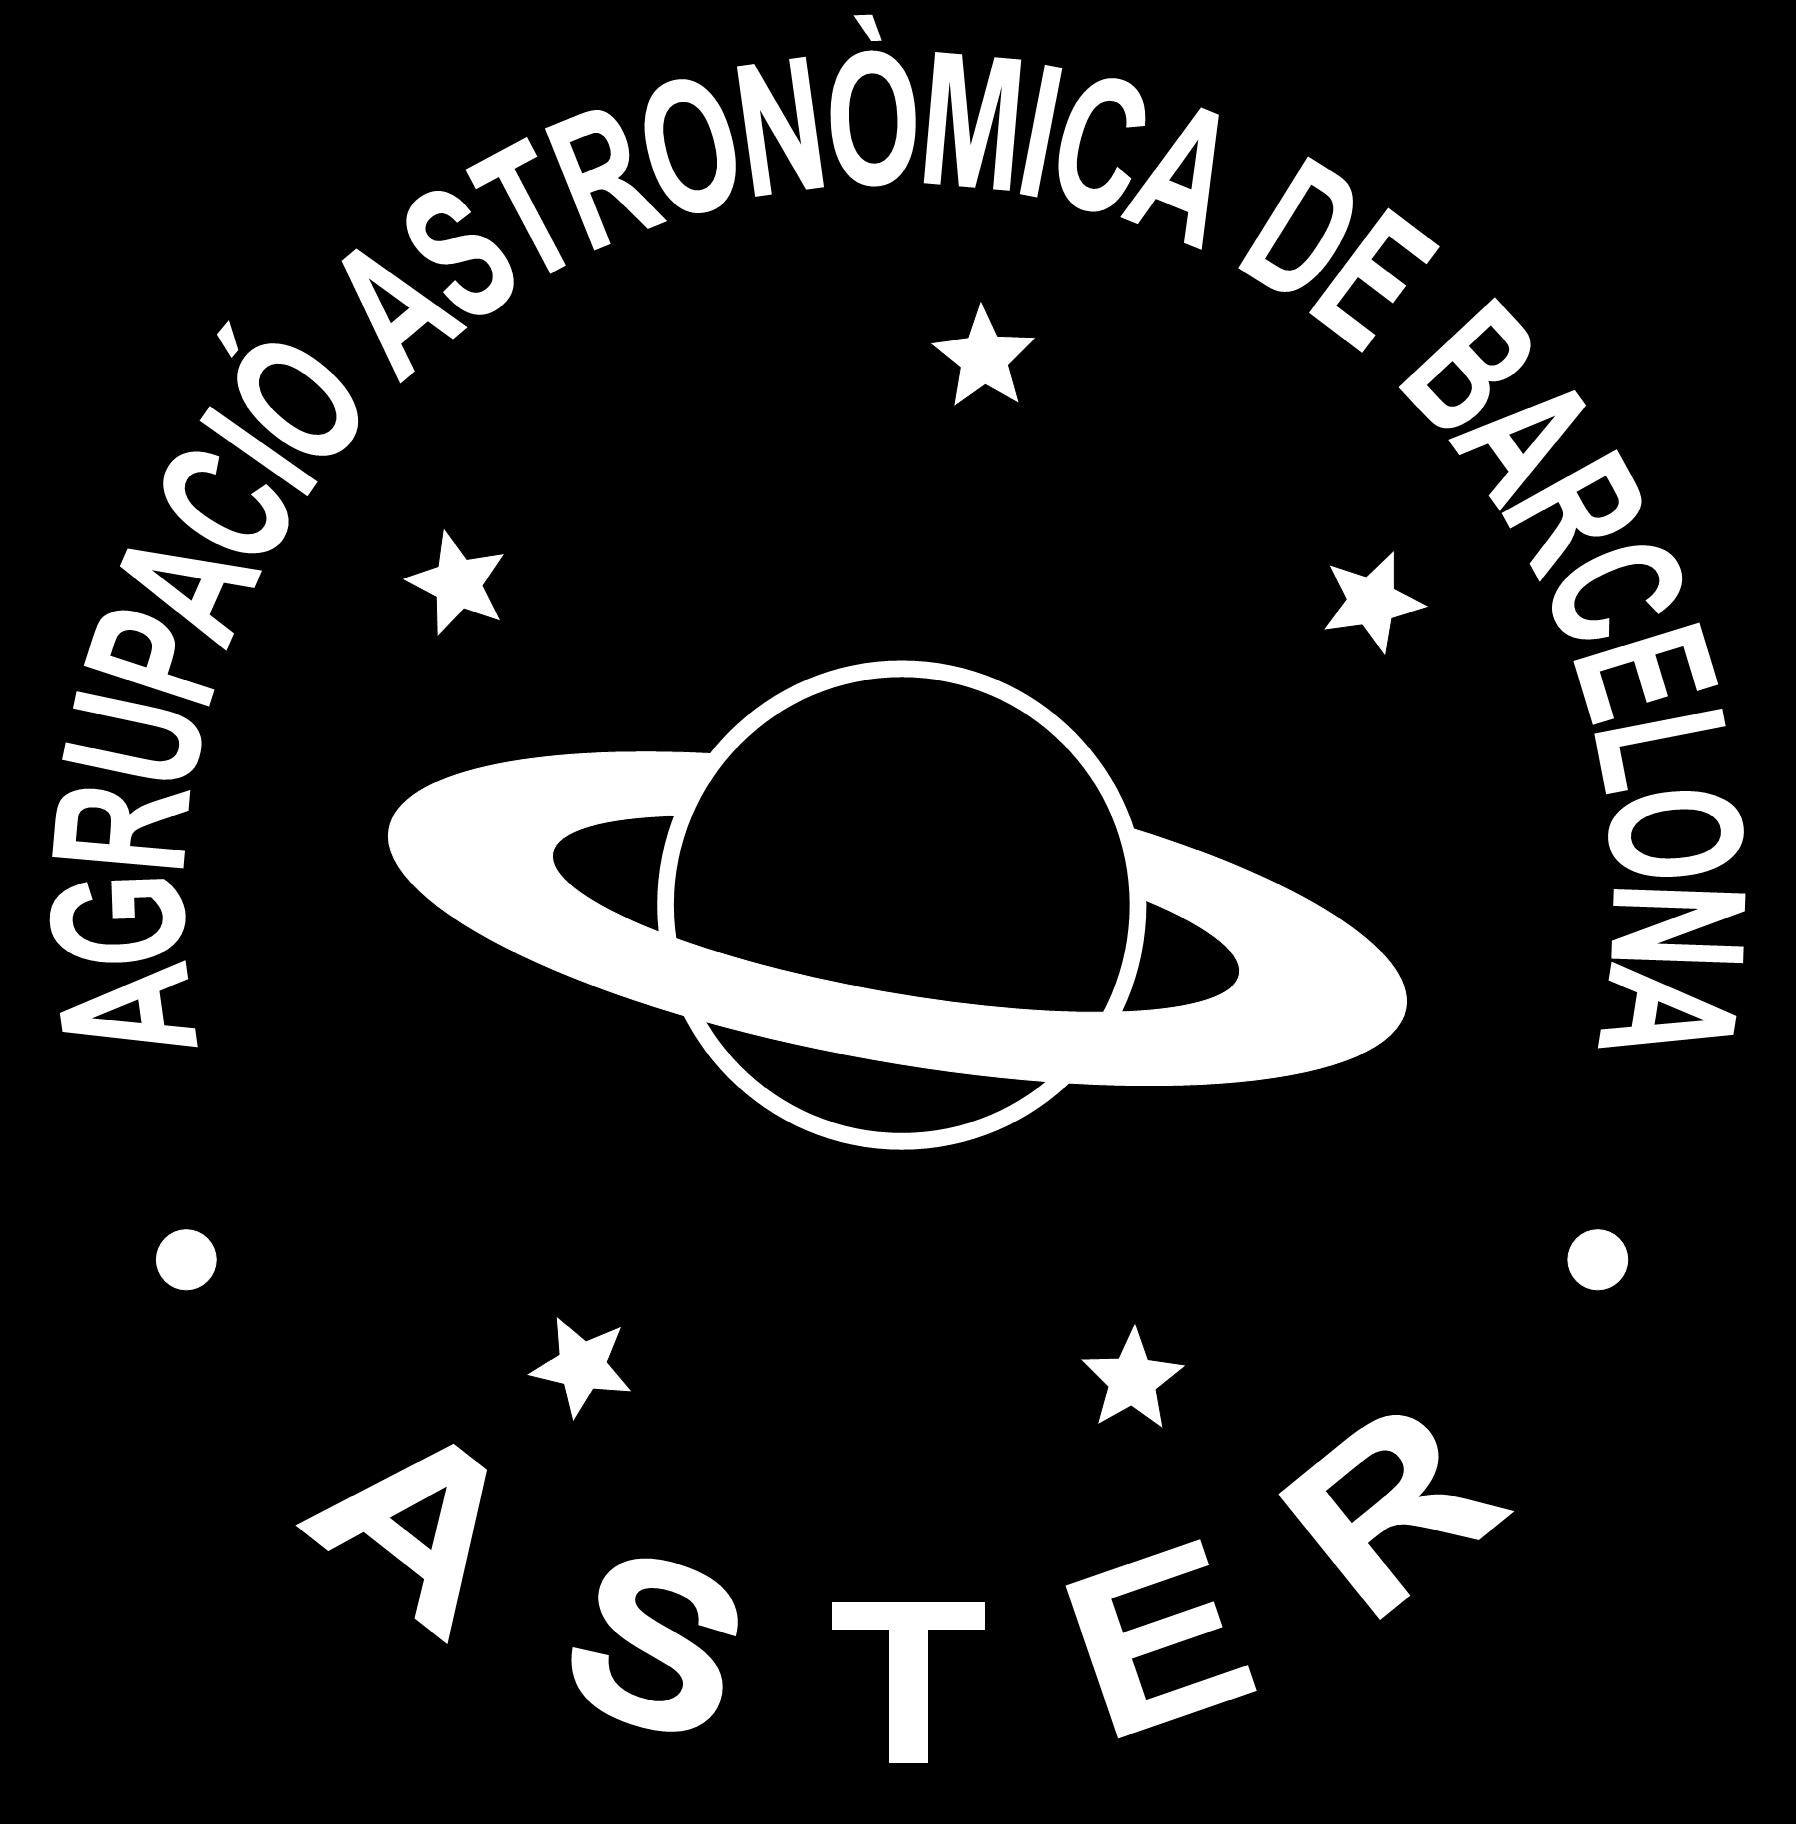 Aster, Agrupació Astronòmica de Barcelona